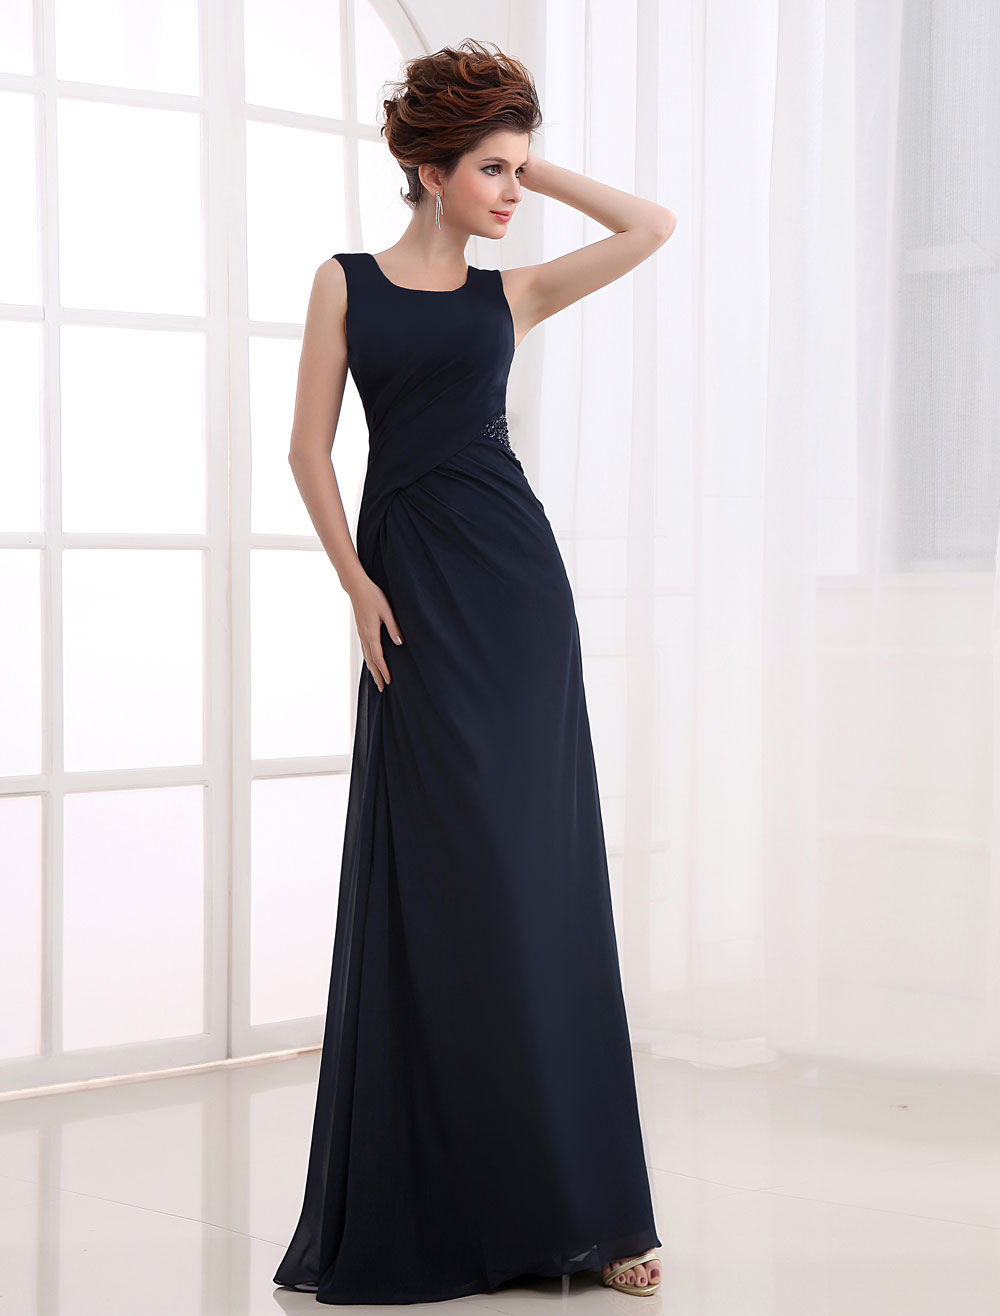 Elegant Deep Navy Blue Spinning Prom Dress - Milanoo.com